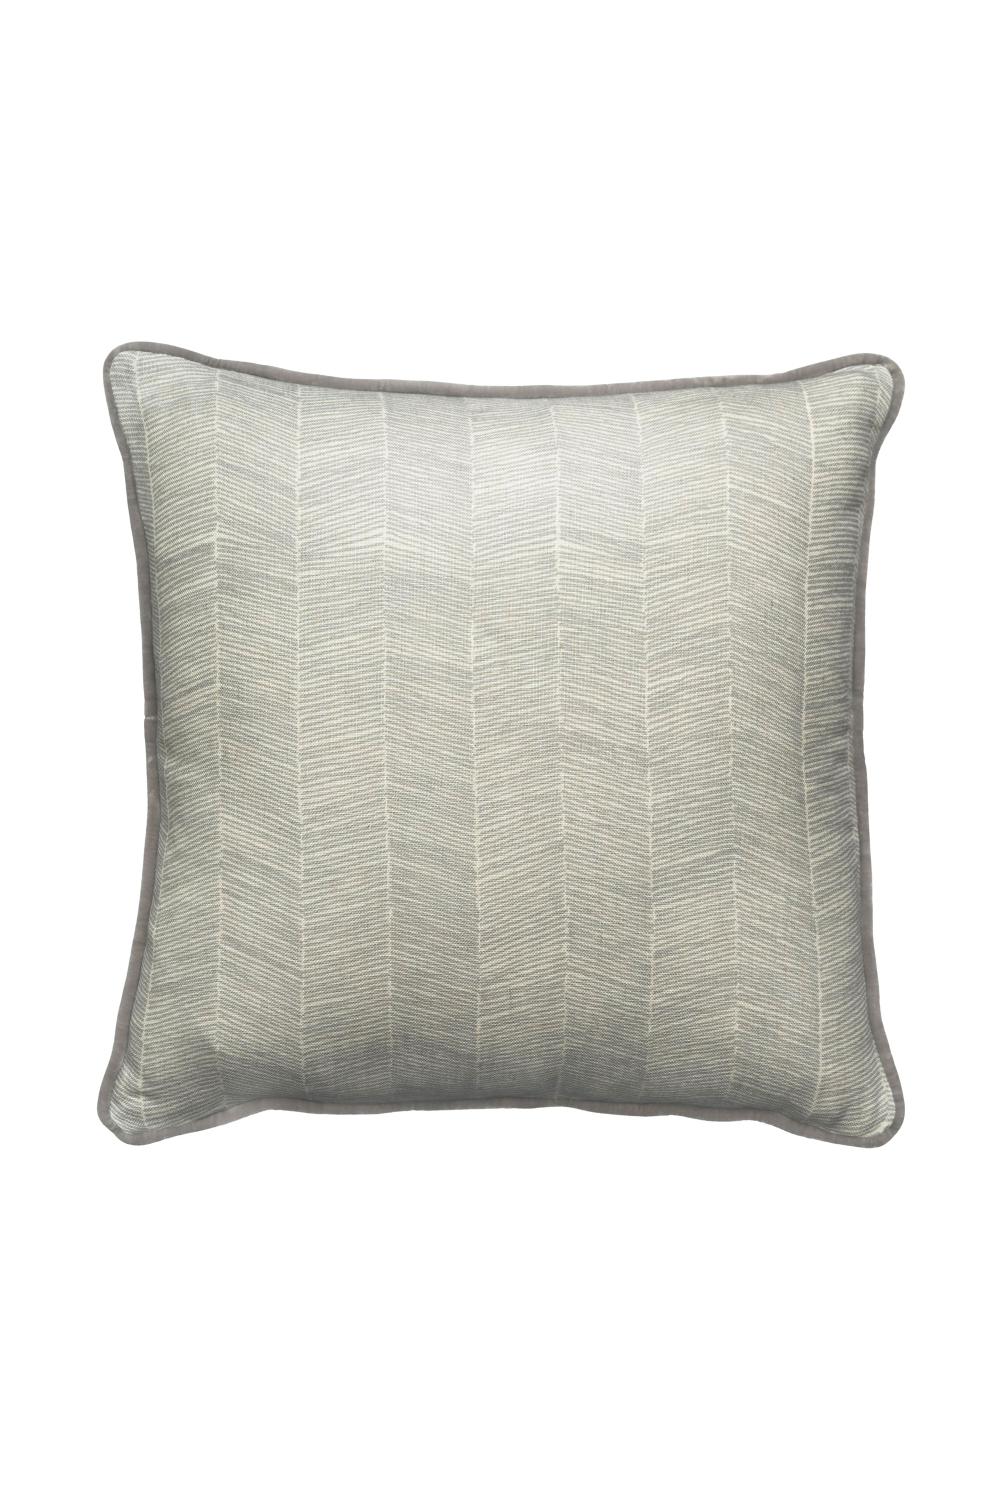 Gray Herringbone Cushion with Velvet Piping | Andrew Martin Fasano